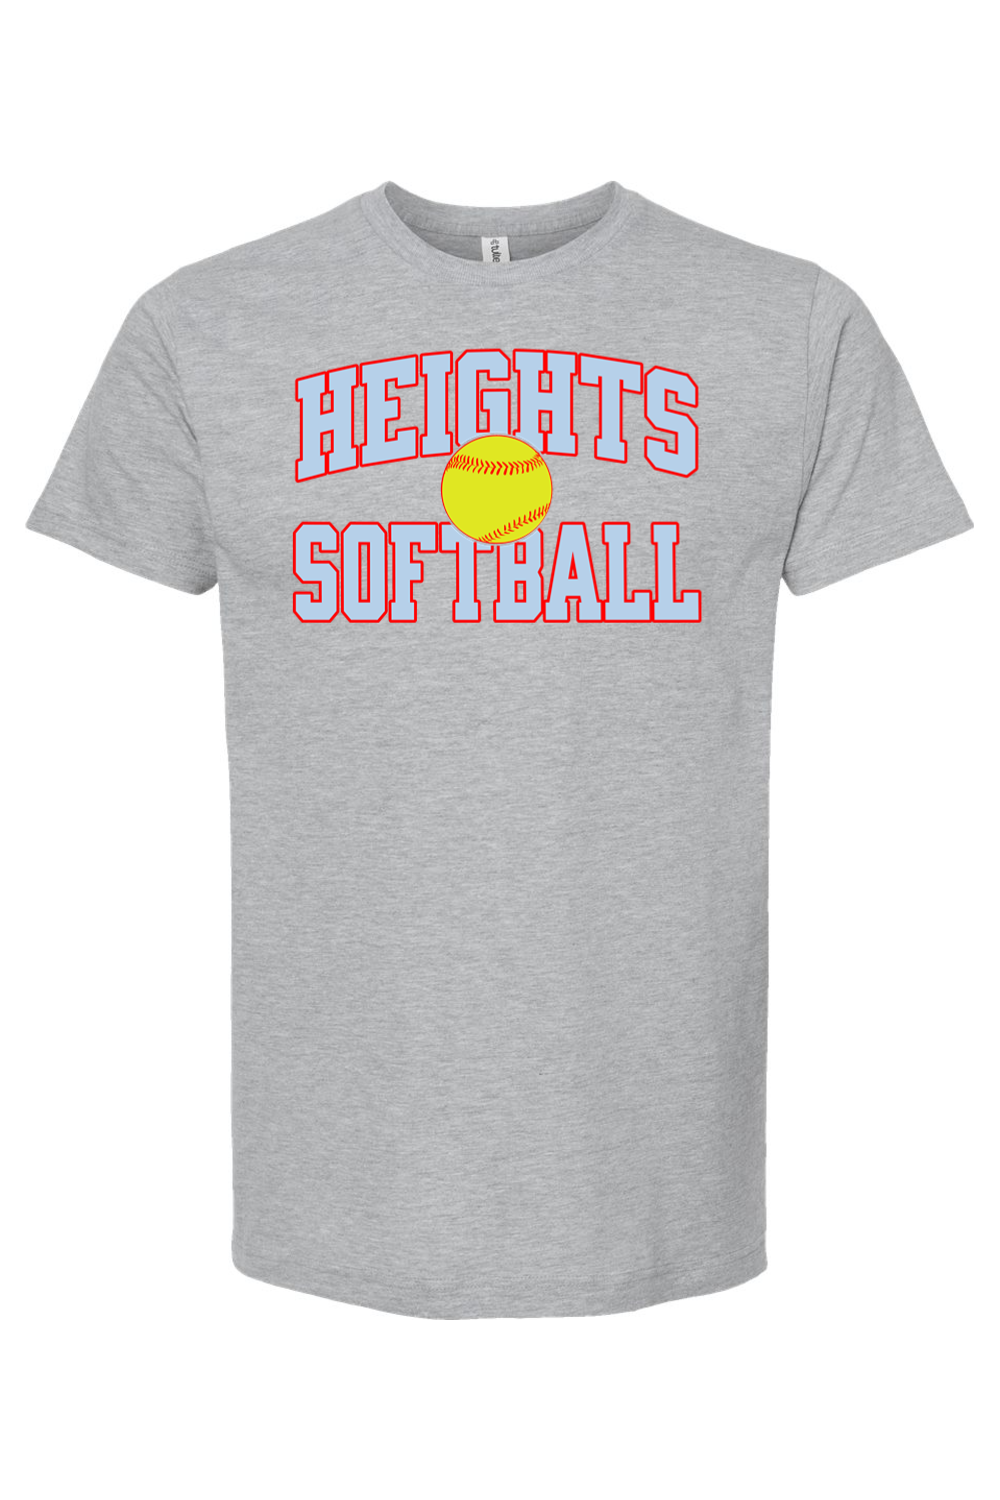 Heights Softball - Block - T-Shirt - Yinzylvania